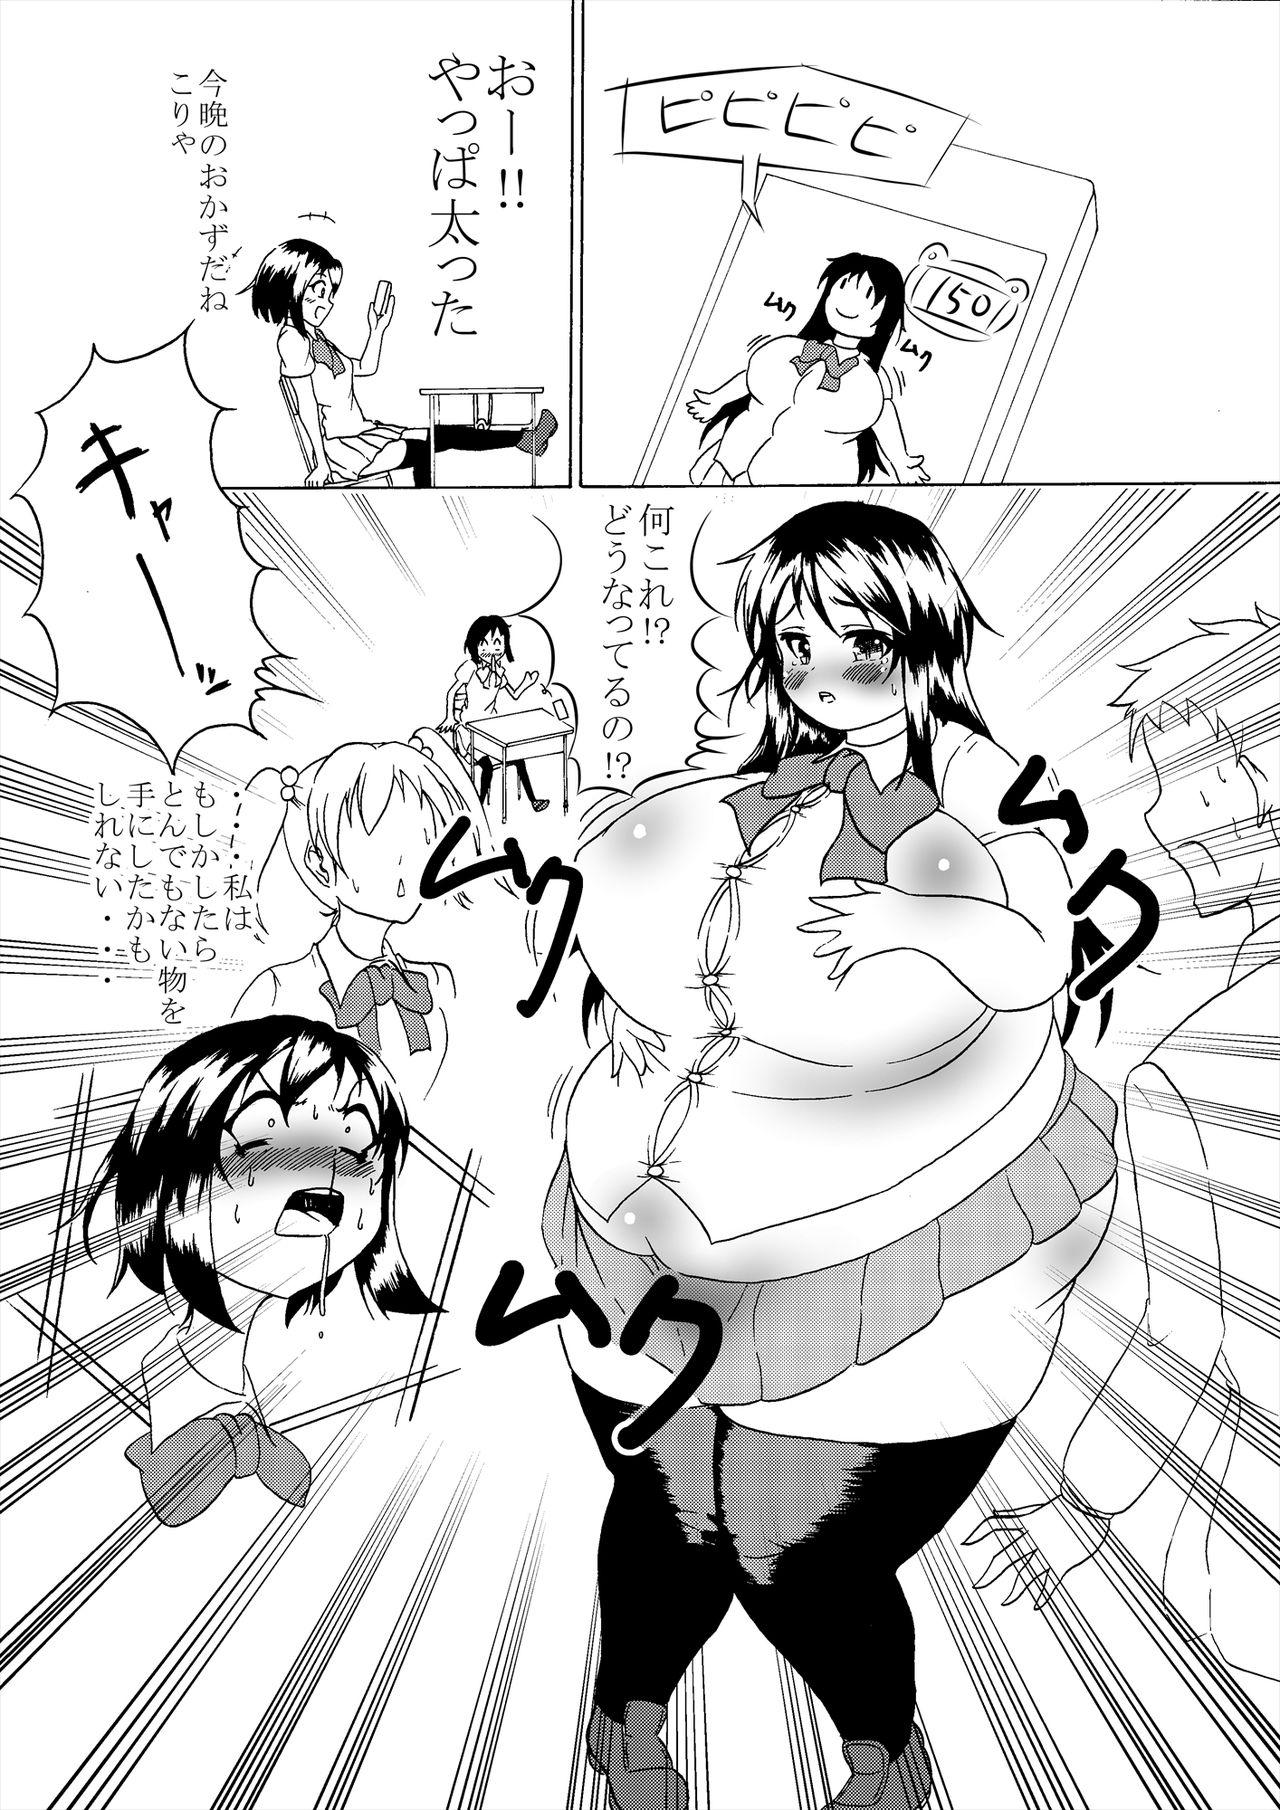 Sex Party Comics Collection of Kukuru - Touhou project Kantai collection Haydee Bigblackcock - Page 7